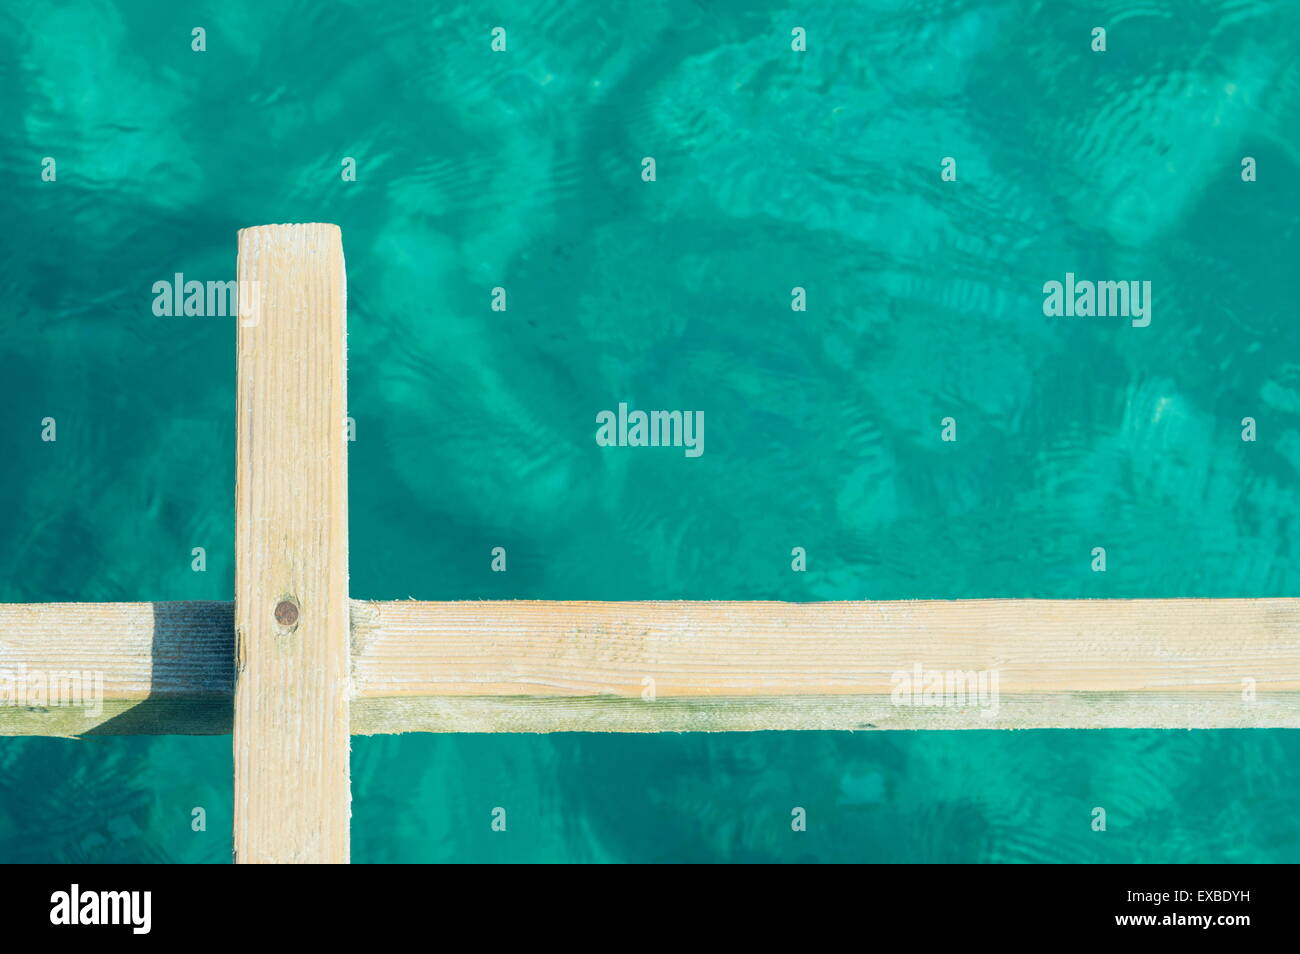 Fotografía abstracta de una placa de madera clara angainst agua de mar Foto de stock